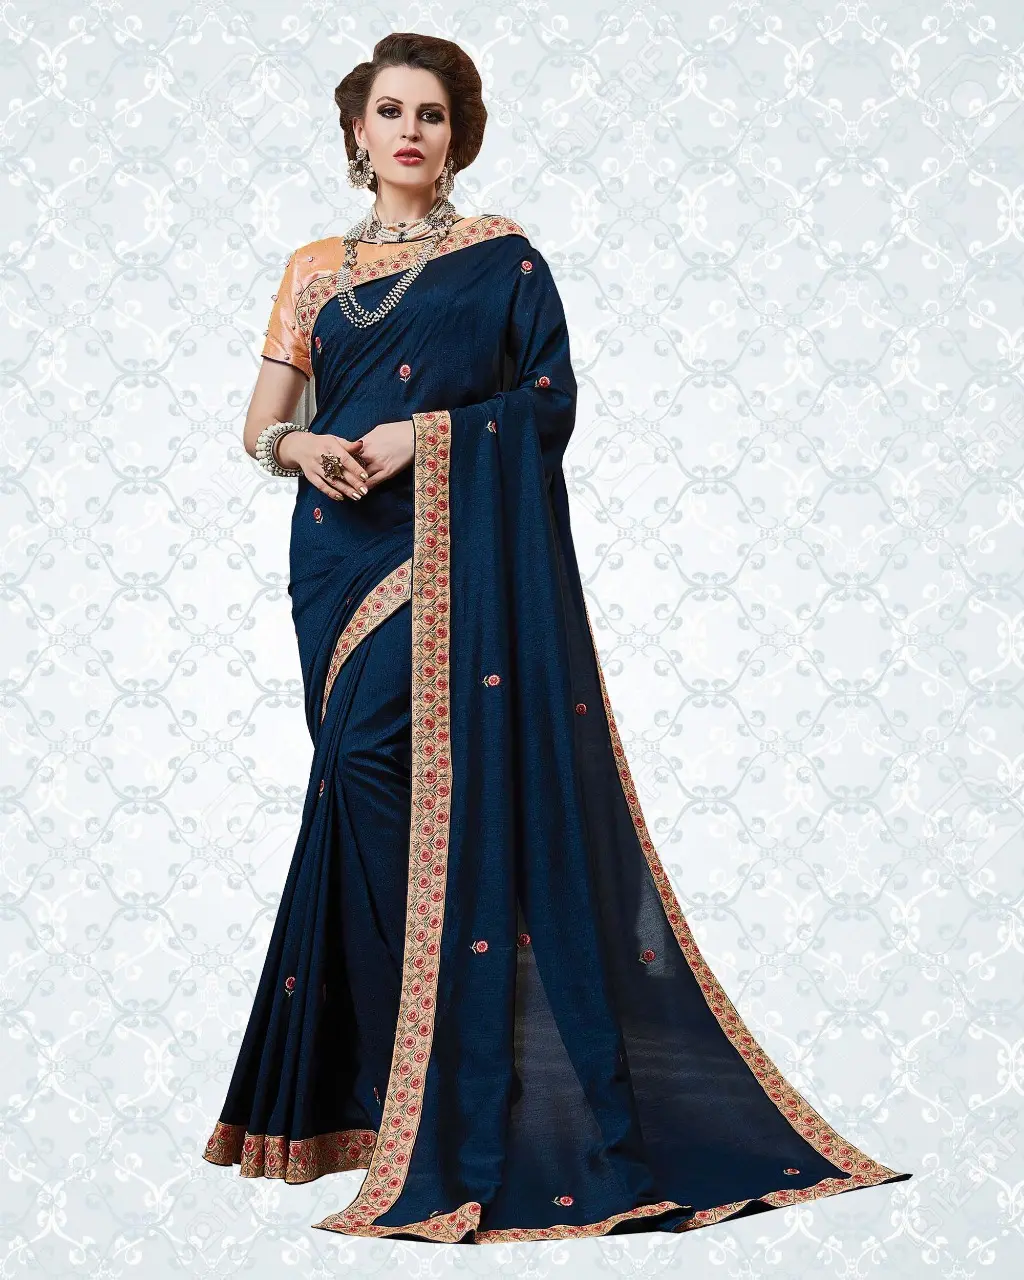 Индийская Свадебная коллекция R & D Exports, сари zari buttis с вышивкой resham в стиле lehenda